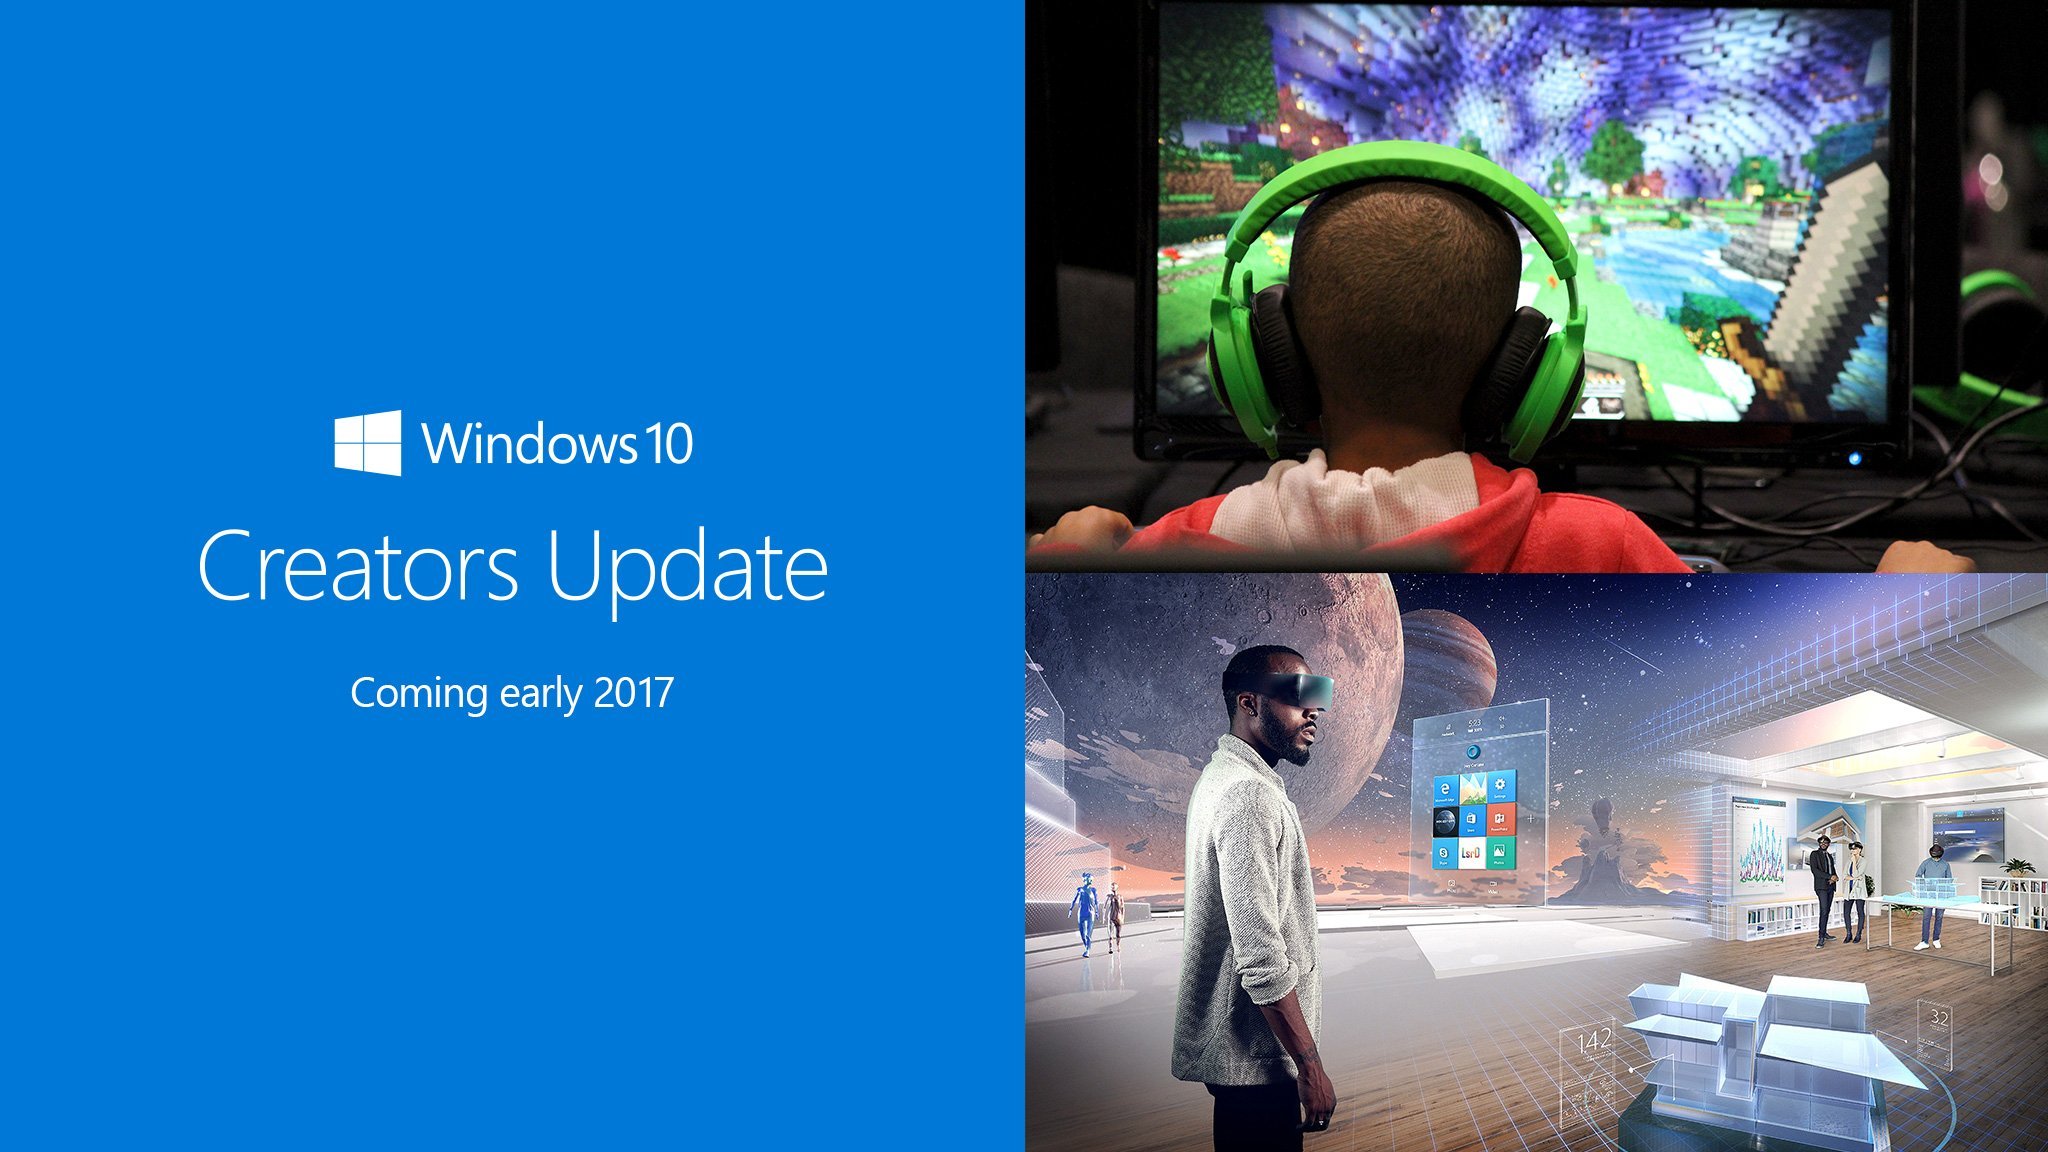 Windows 10 Creators Update SDK is now feature complete